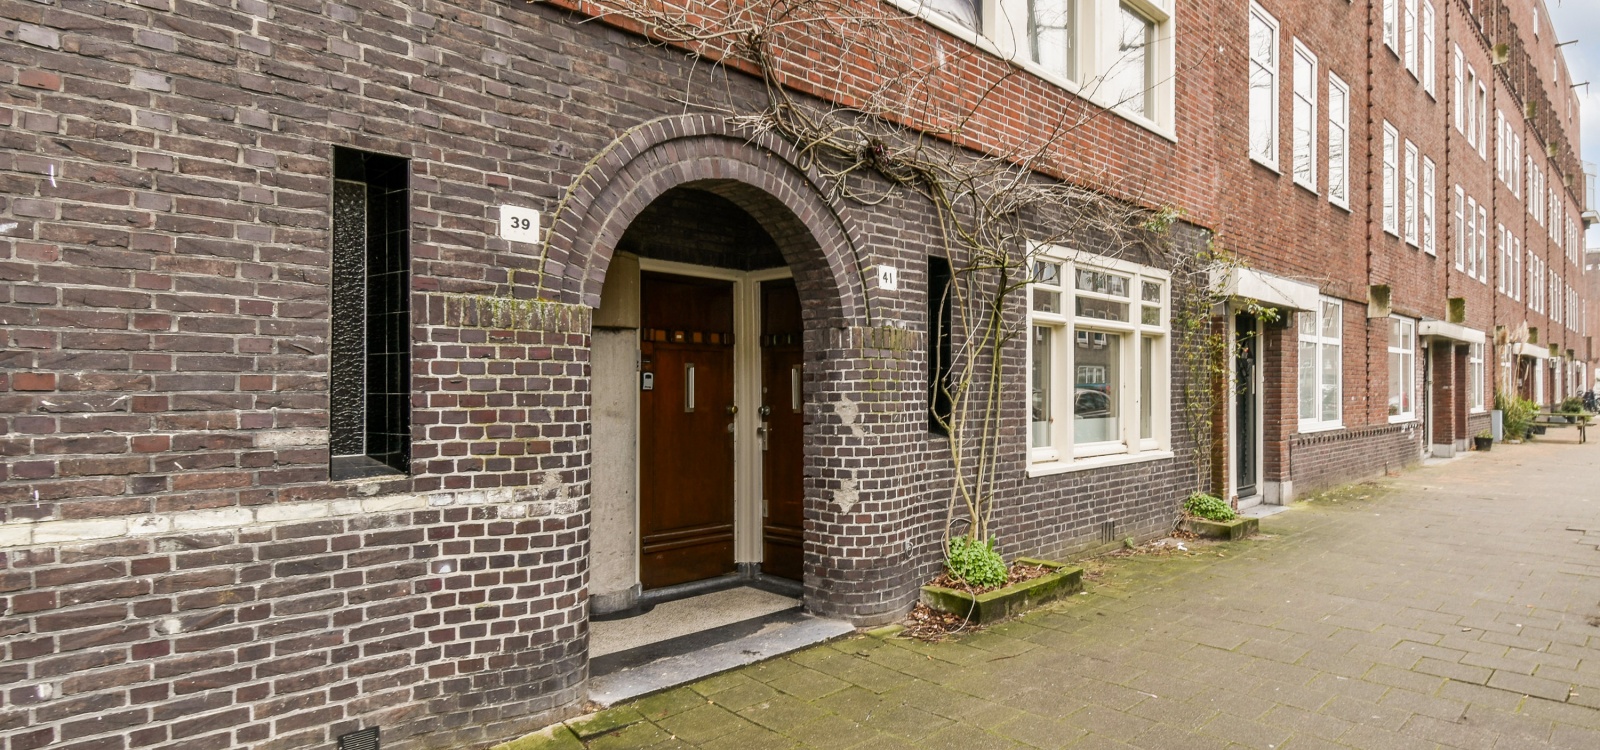 Stuyvesantstraat,Netherlands 1058AK,2 Bedrooms Bedrooms,1 BathroomBathrooms,Apartment,Stuyvesantstraat,3,1515